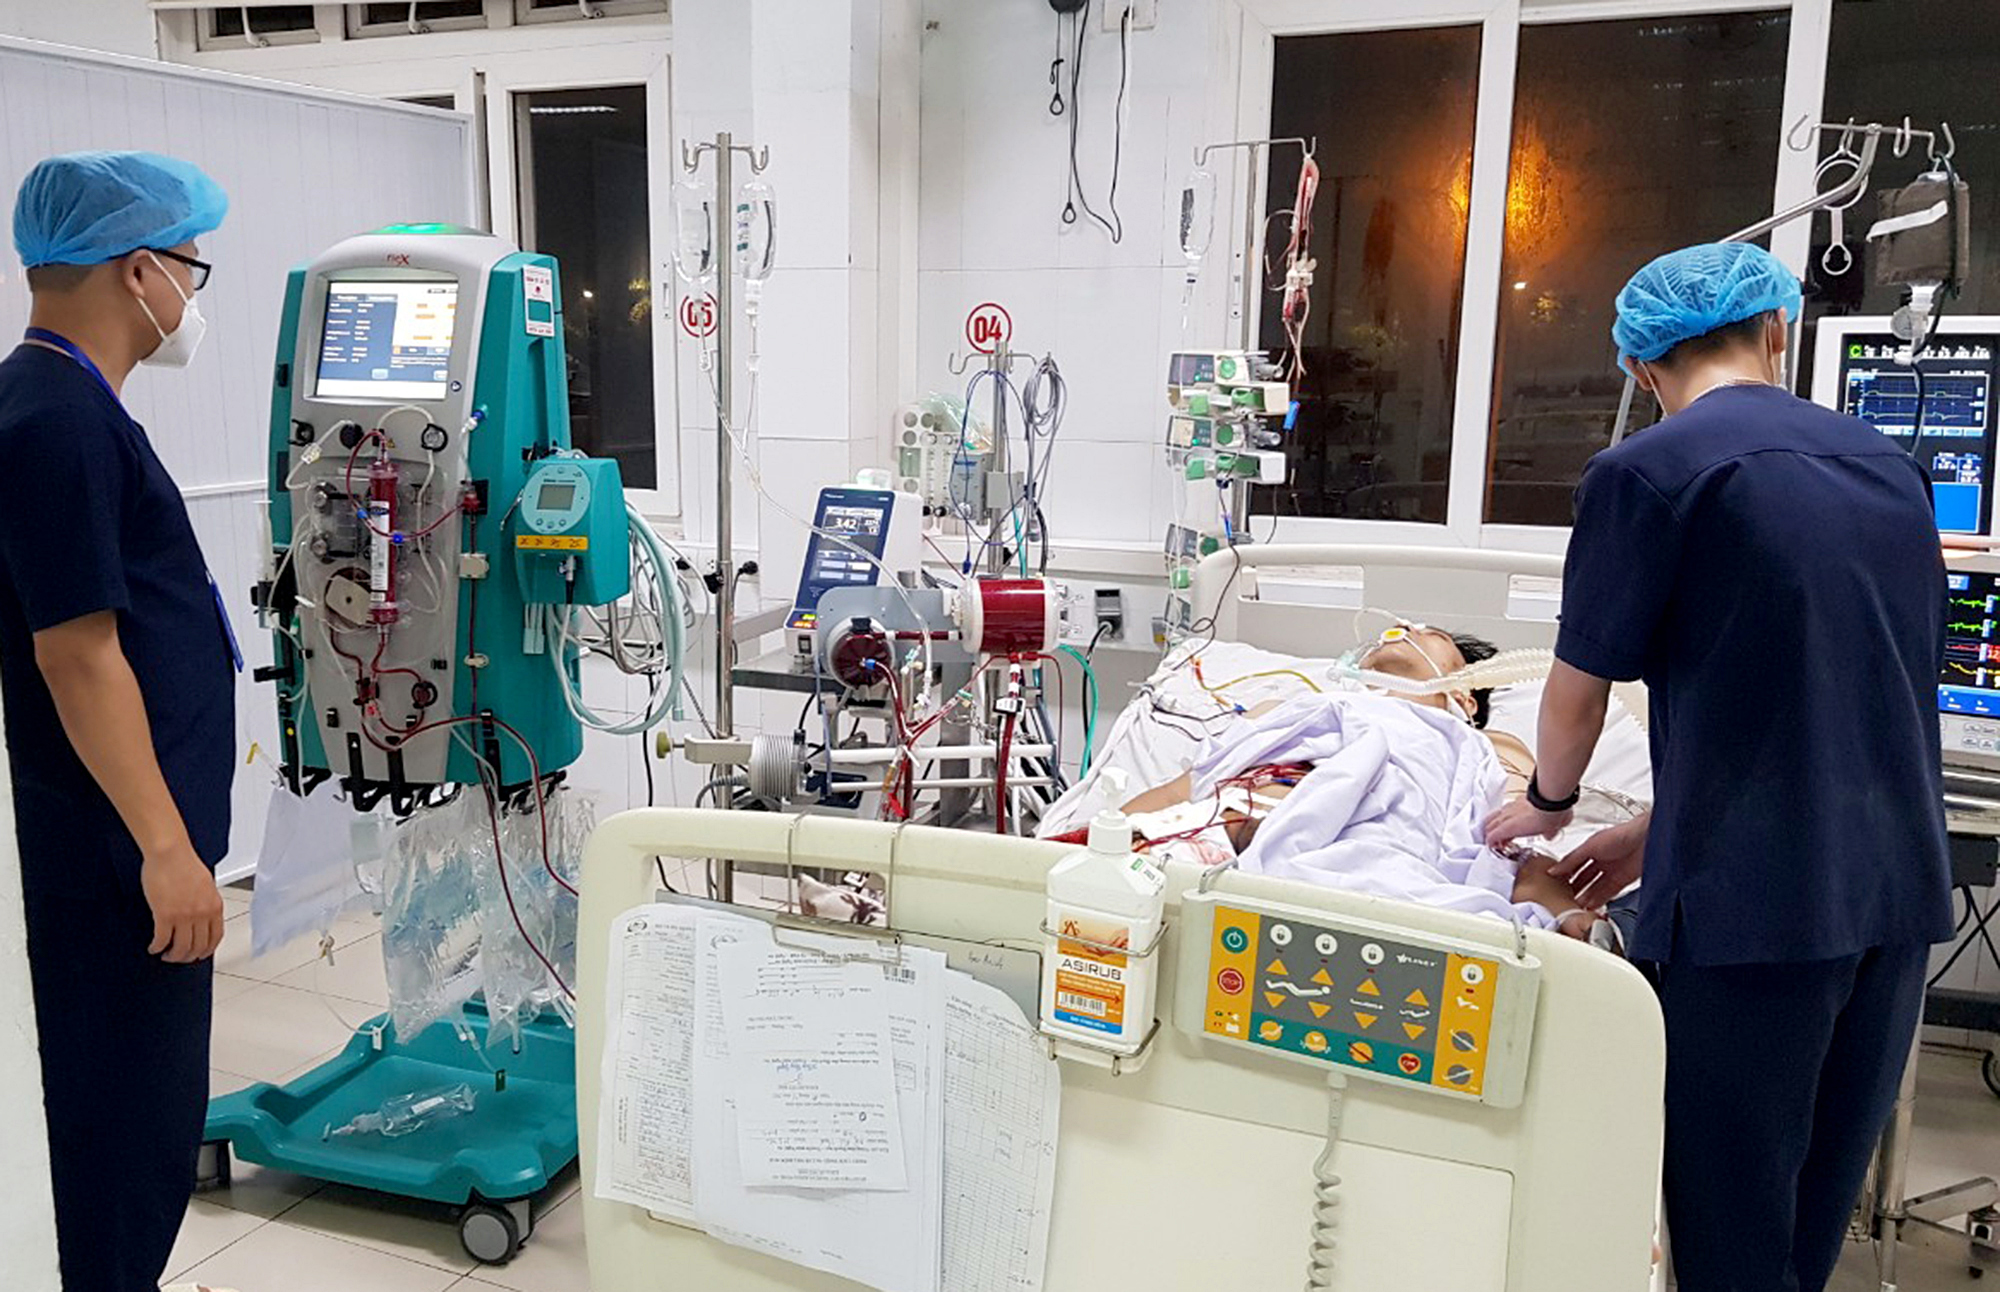 Bệnh viện Bệnh nhiệt đới Trung ương là một trong những cơ sở y tế uy tín nhất tại Việt Nam. Hình ảnh về bệnh viện này sẽ giúp bạn hiểu rõ hơn về chất lượng dịch vụ và khả năng điều trị của họ.